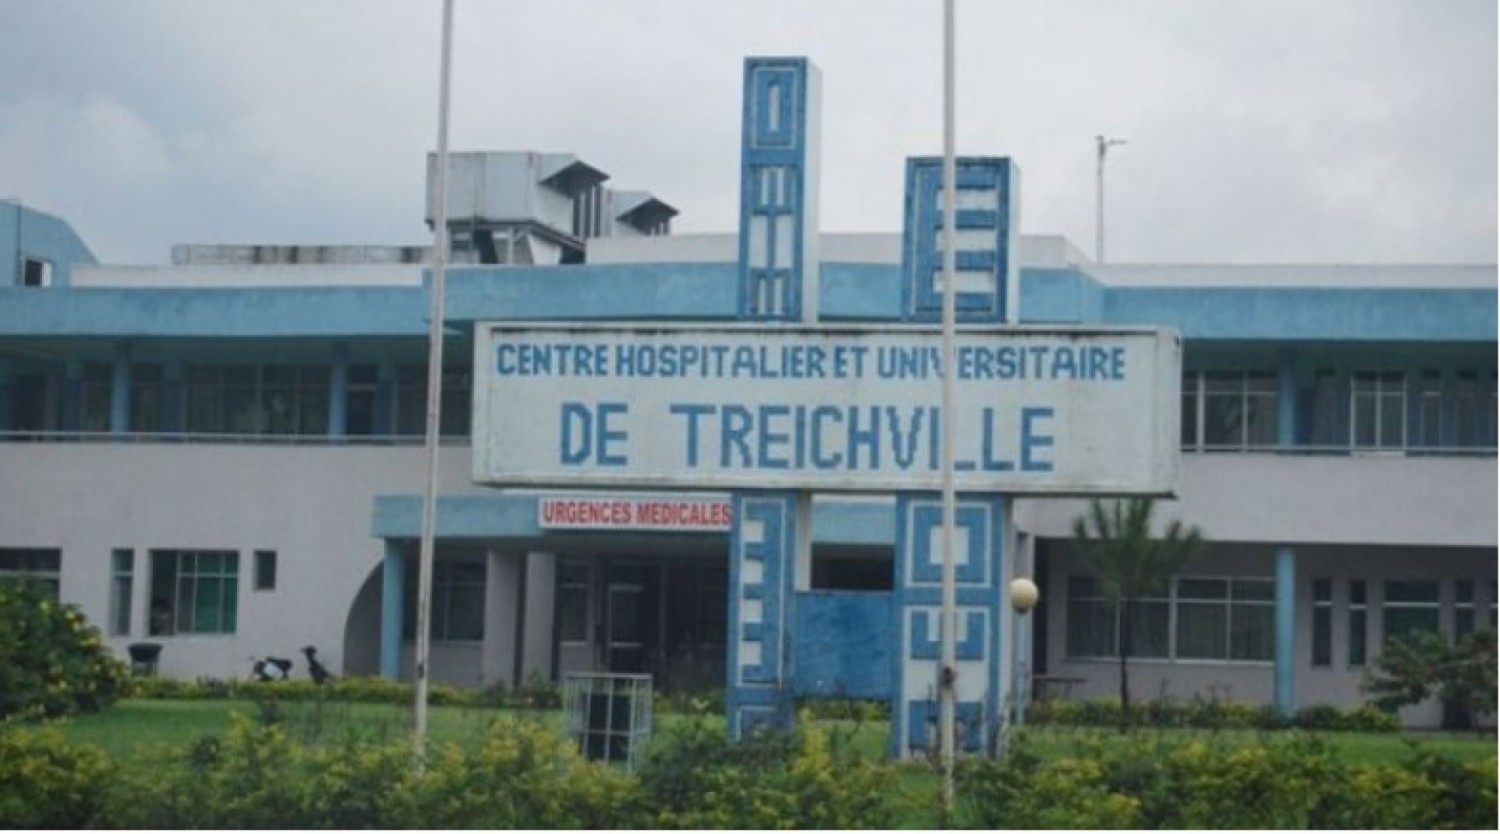 Côte d'Ivoire : Dame tailladée par un élève de 15 ans pour avoir refusé ses avances, 10 millions FCFA  à mobiliser pour son opération chirurgicale